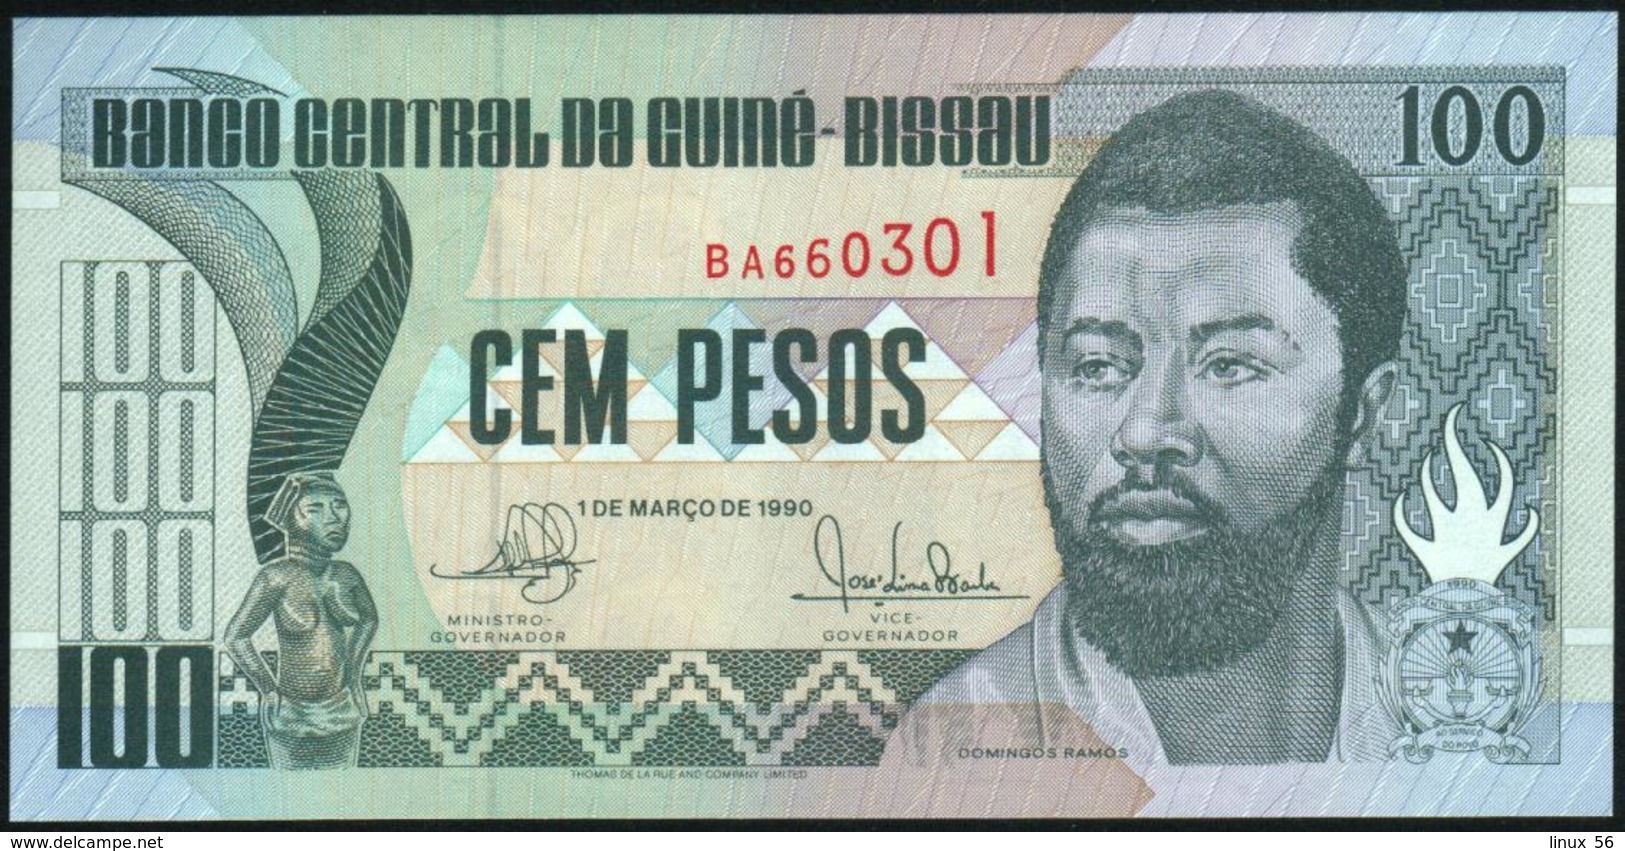 GUINEA BISSAU - 100 Pesos 01.03.1990 {Banco Central Da Guiné-Bissau} UNC P.11 - Guinea-Bissau